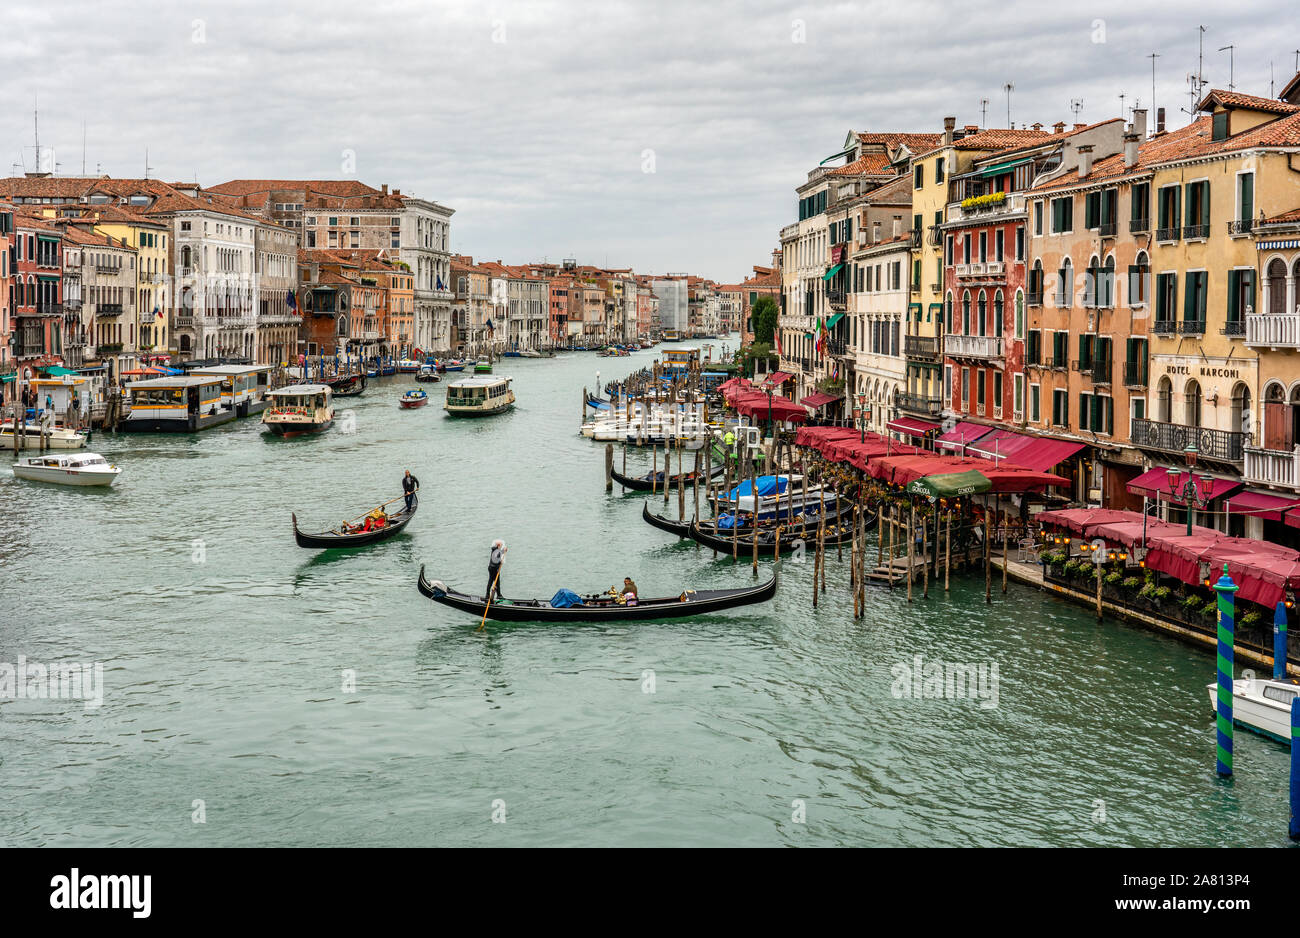 La traversée du Grand Canal de gondoles à Venise Italie vue du Pont du Rialto Banque D'Images